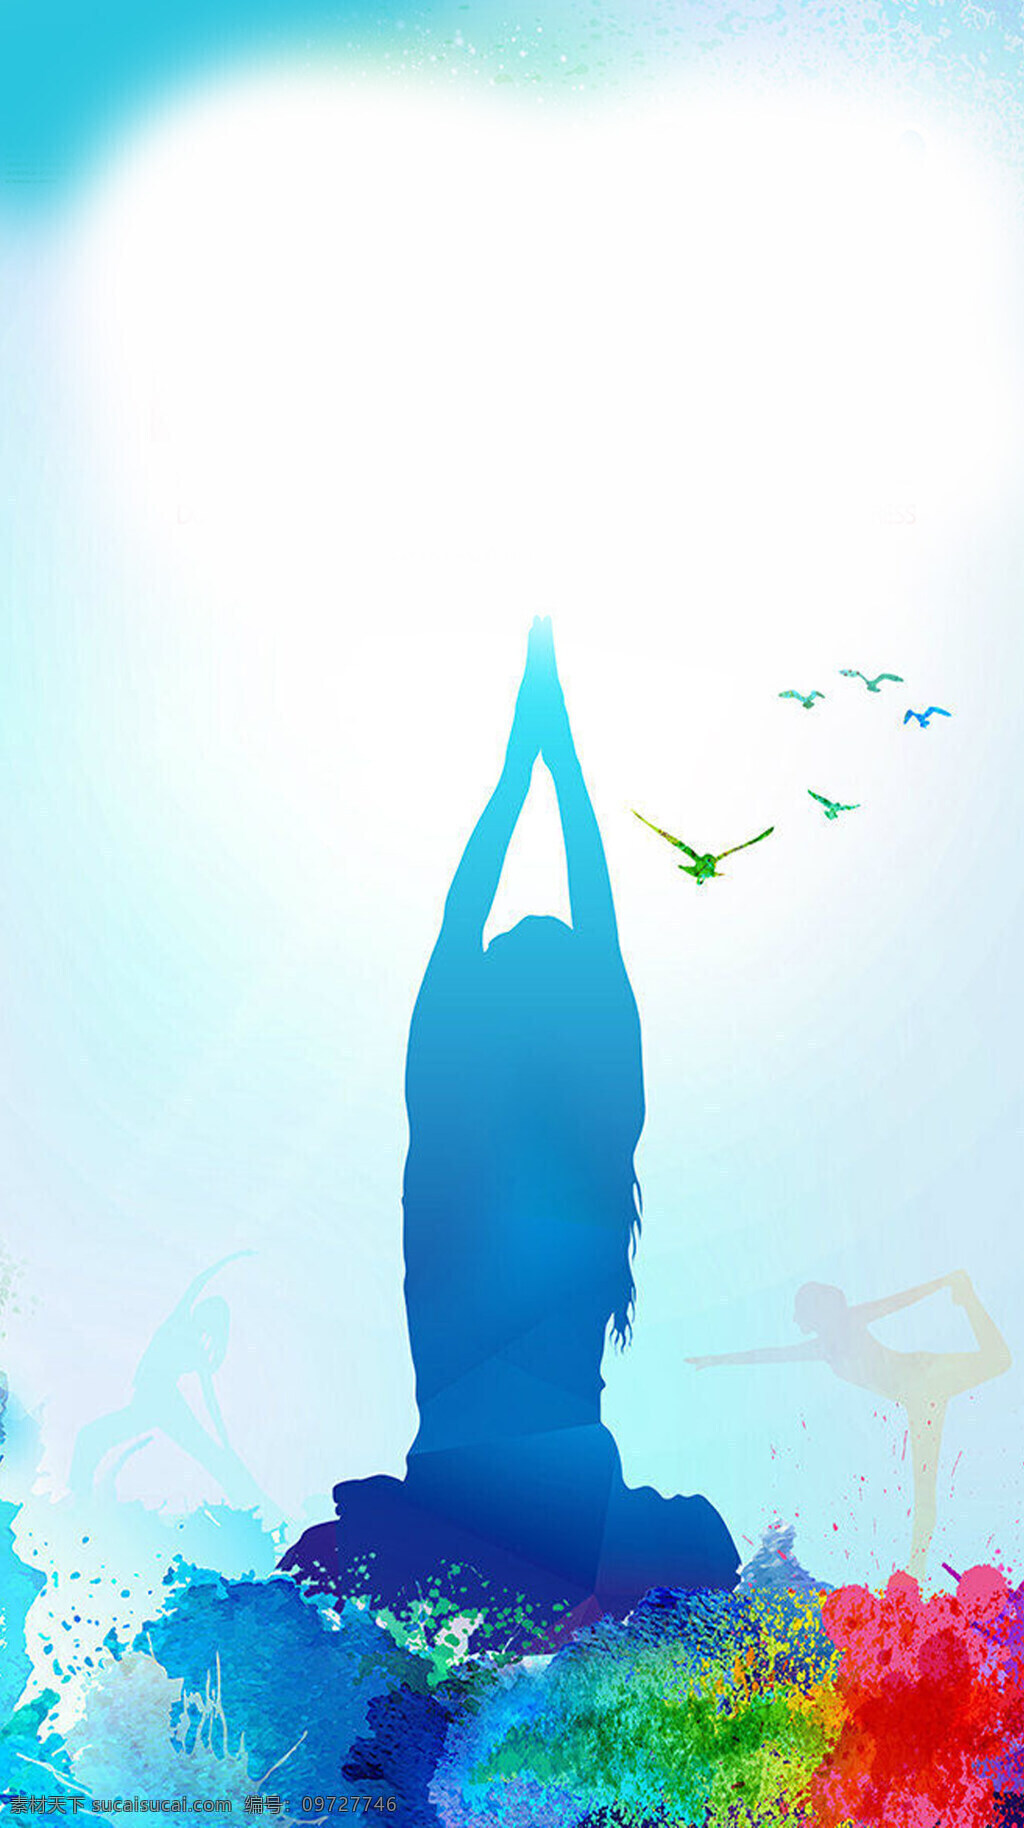 蓝色 创意 瑜伽 暑假 班 h5 背景 素材图片 暑假班 海报 彩色 瑜伽班